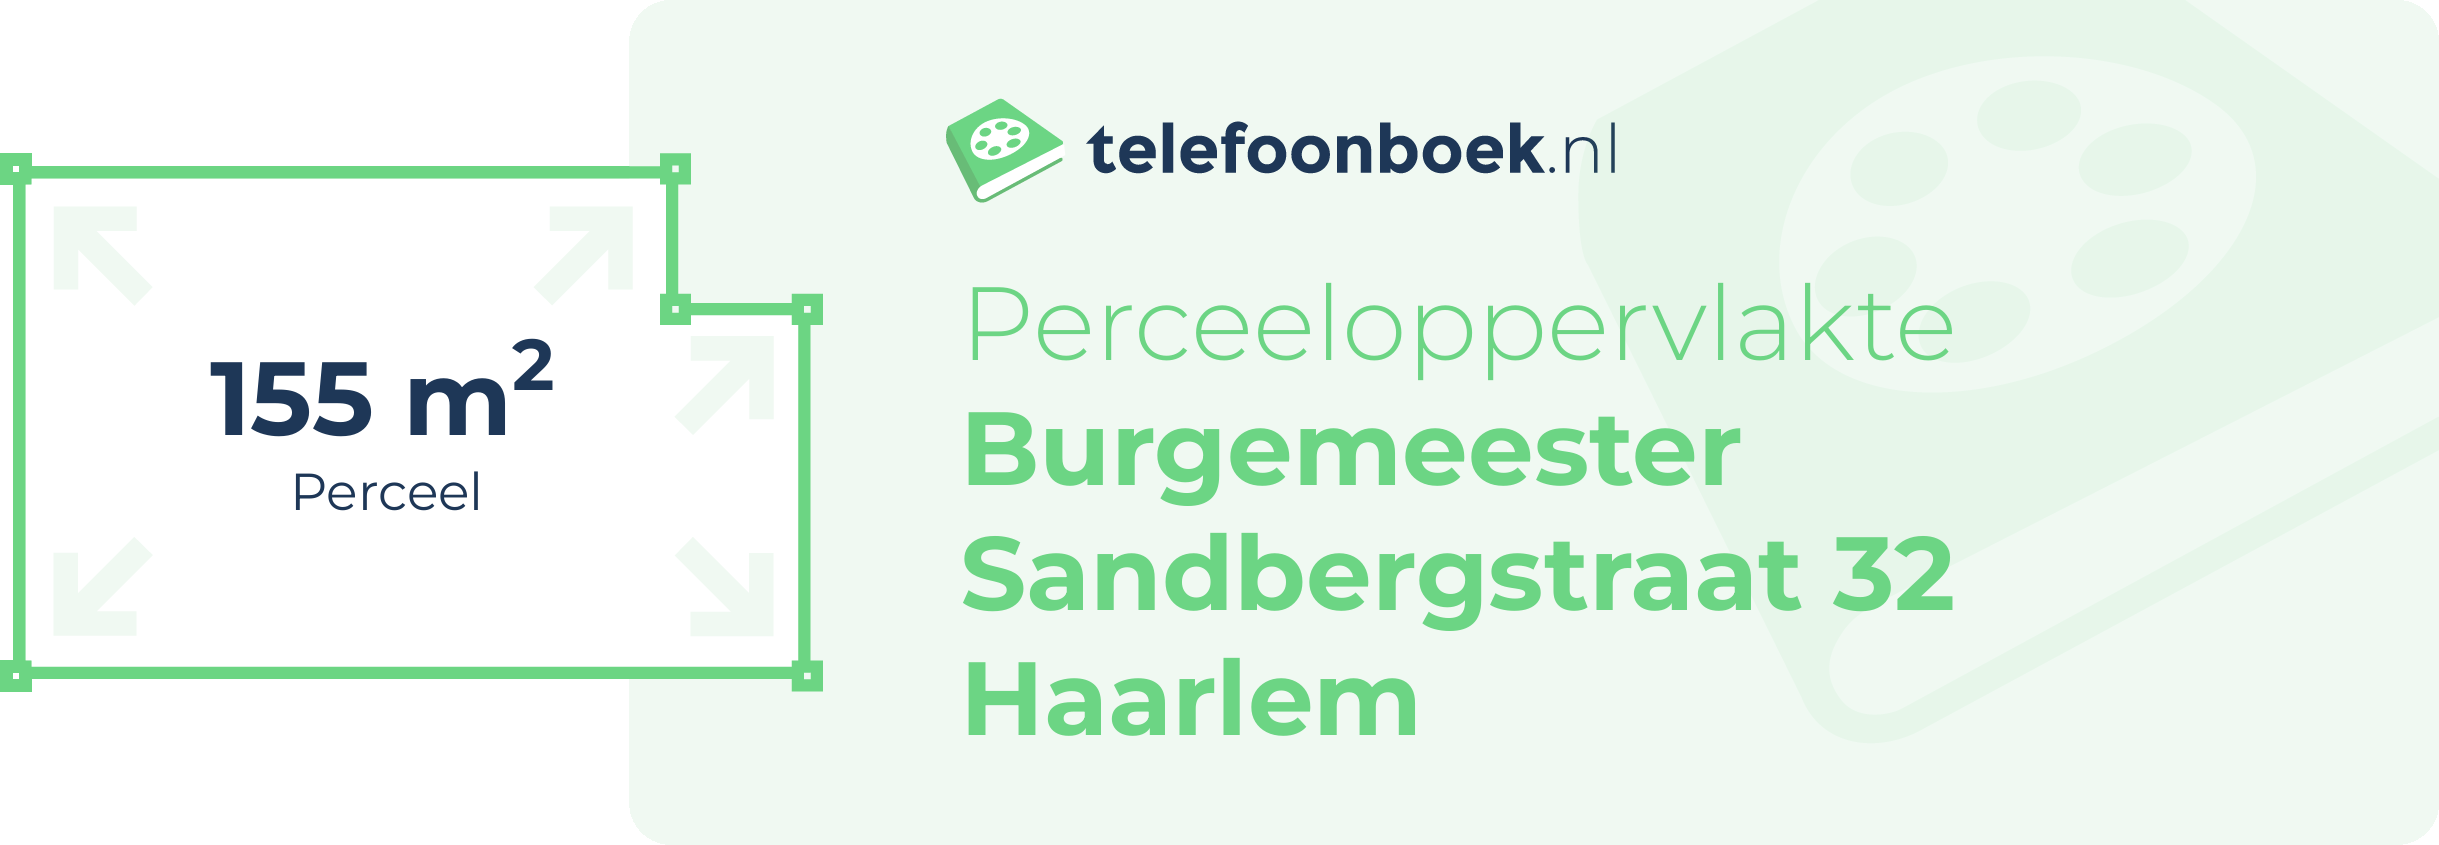 Perceeloppervlakte Burgemeester Sandbergstraat 32 Haarlem